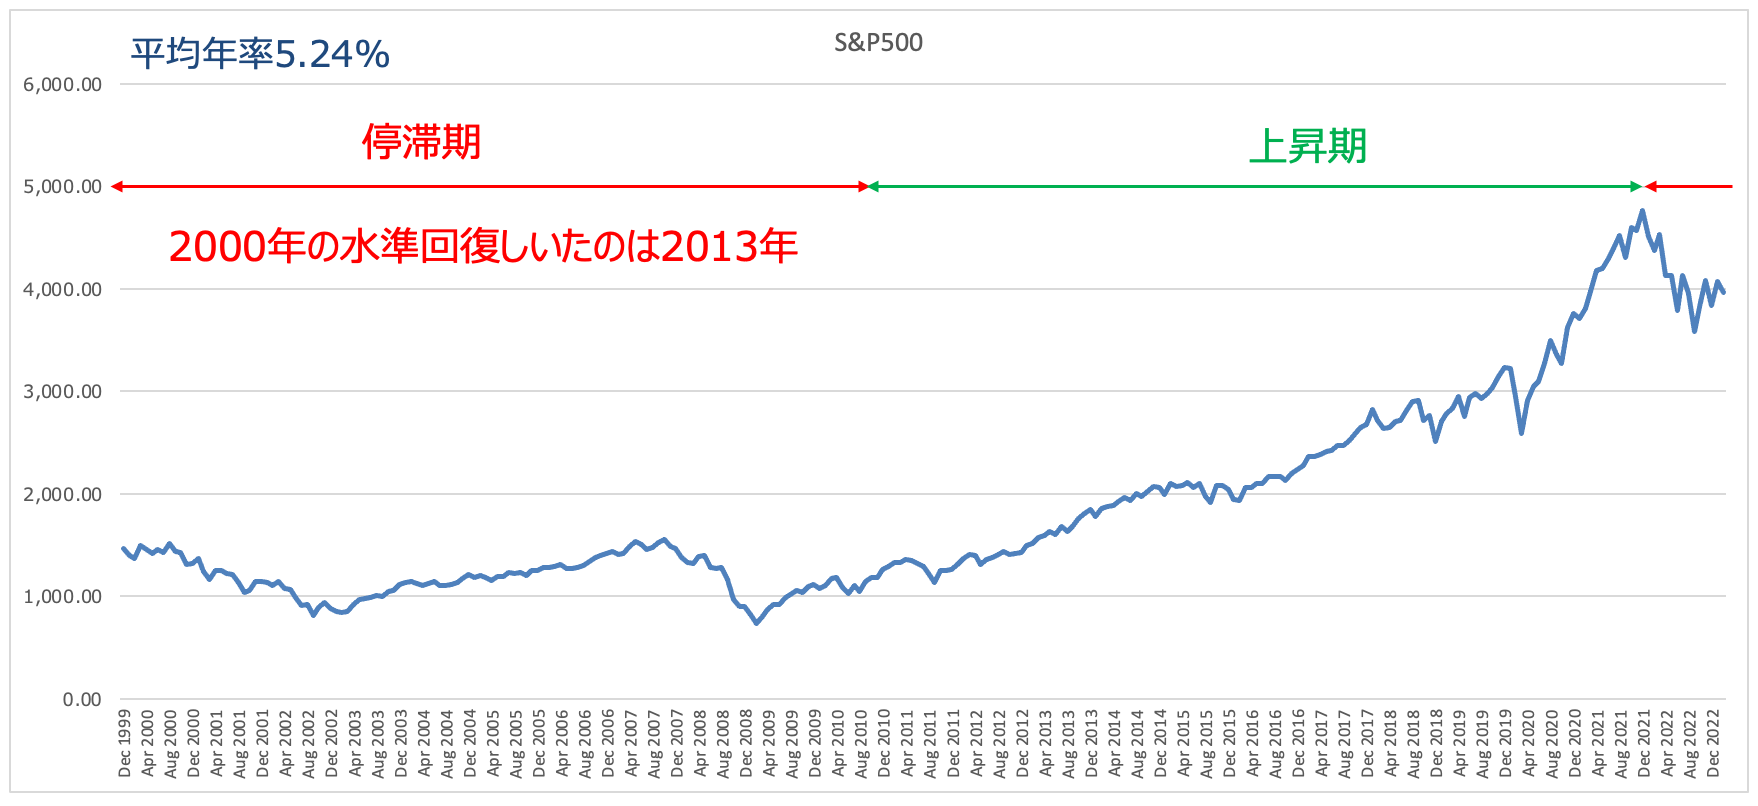 S&P500指数は長期間低迷することがある